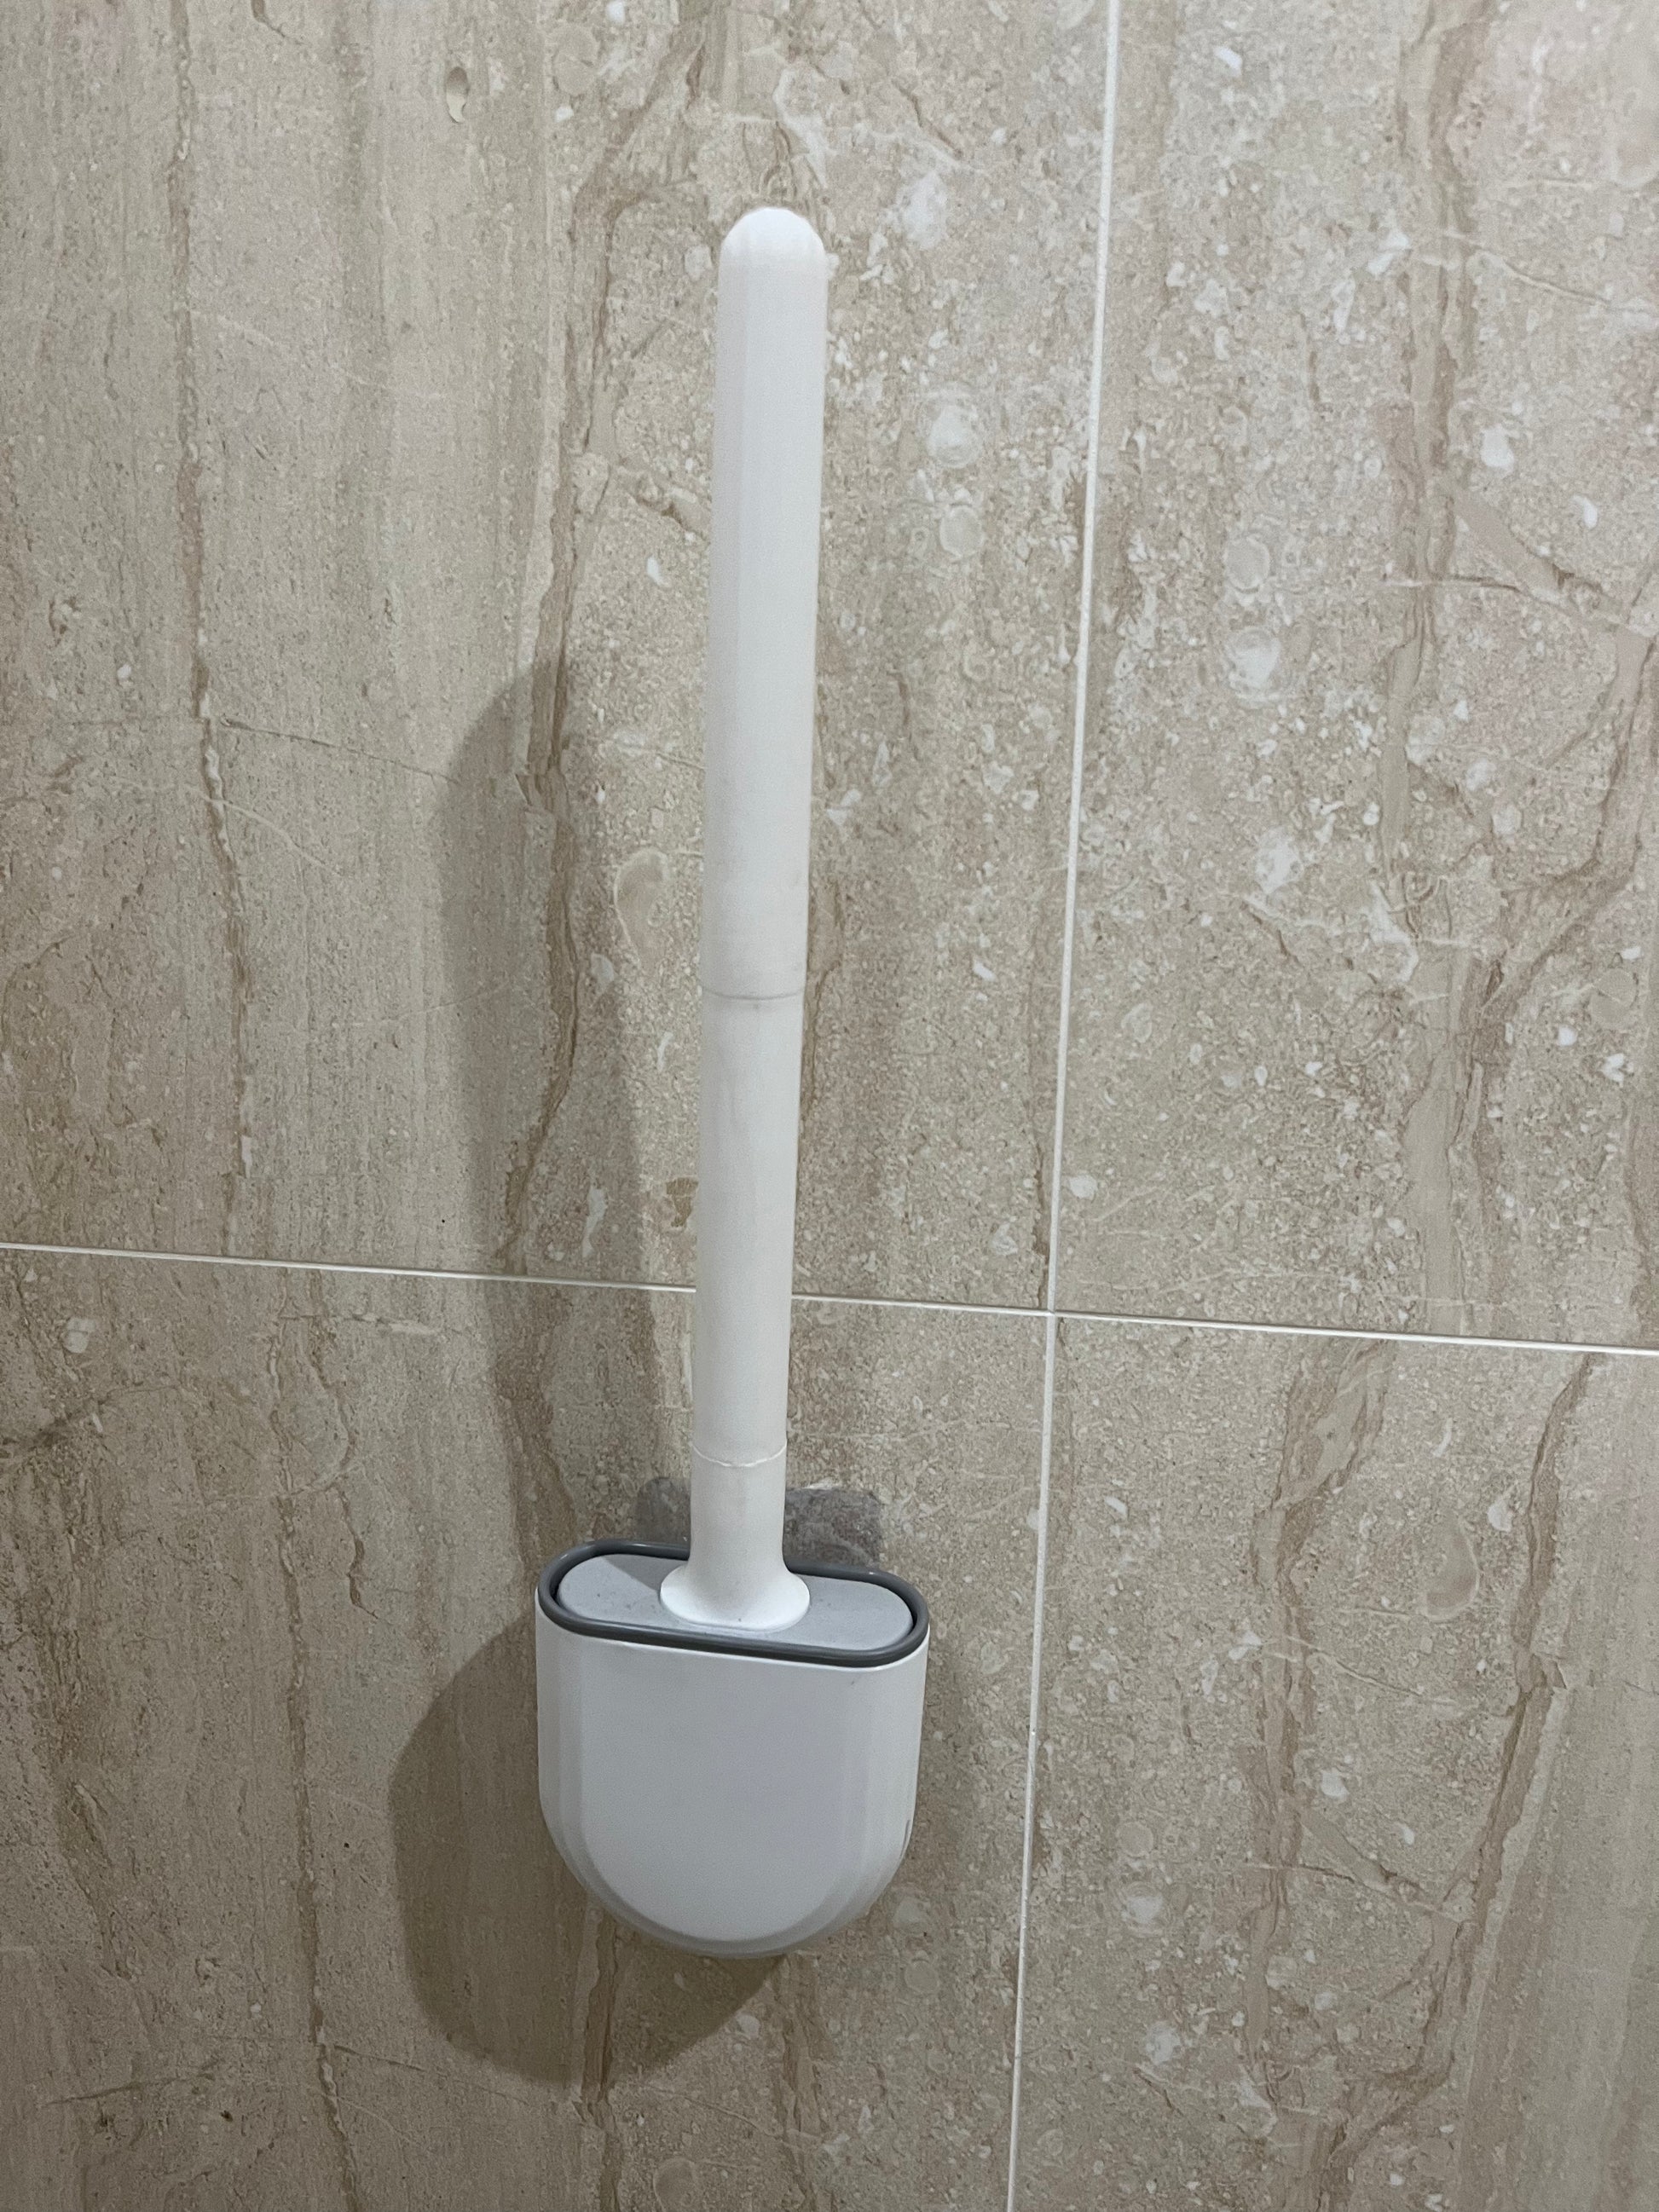 Washable Silicone Toilet Cleaning Brush | FlusheD ECO